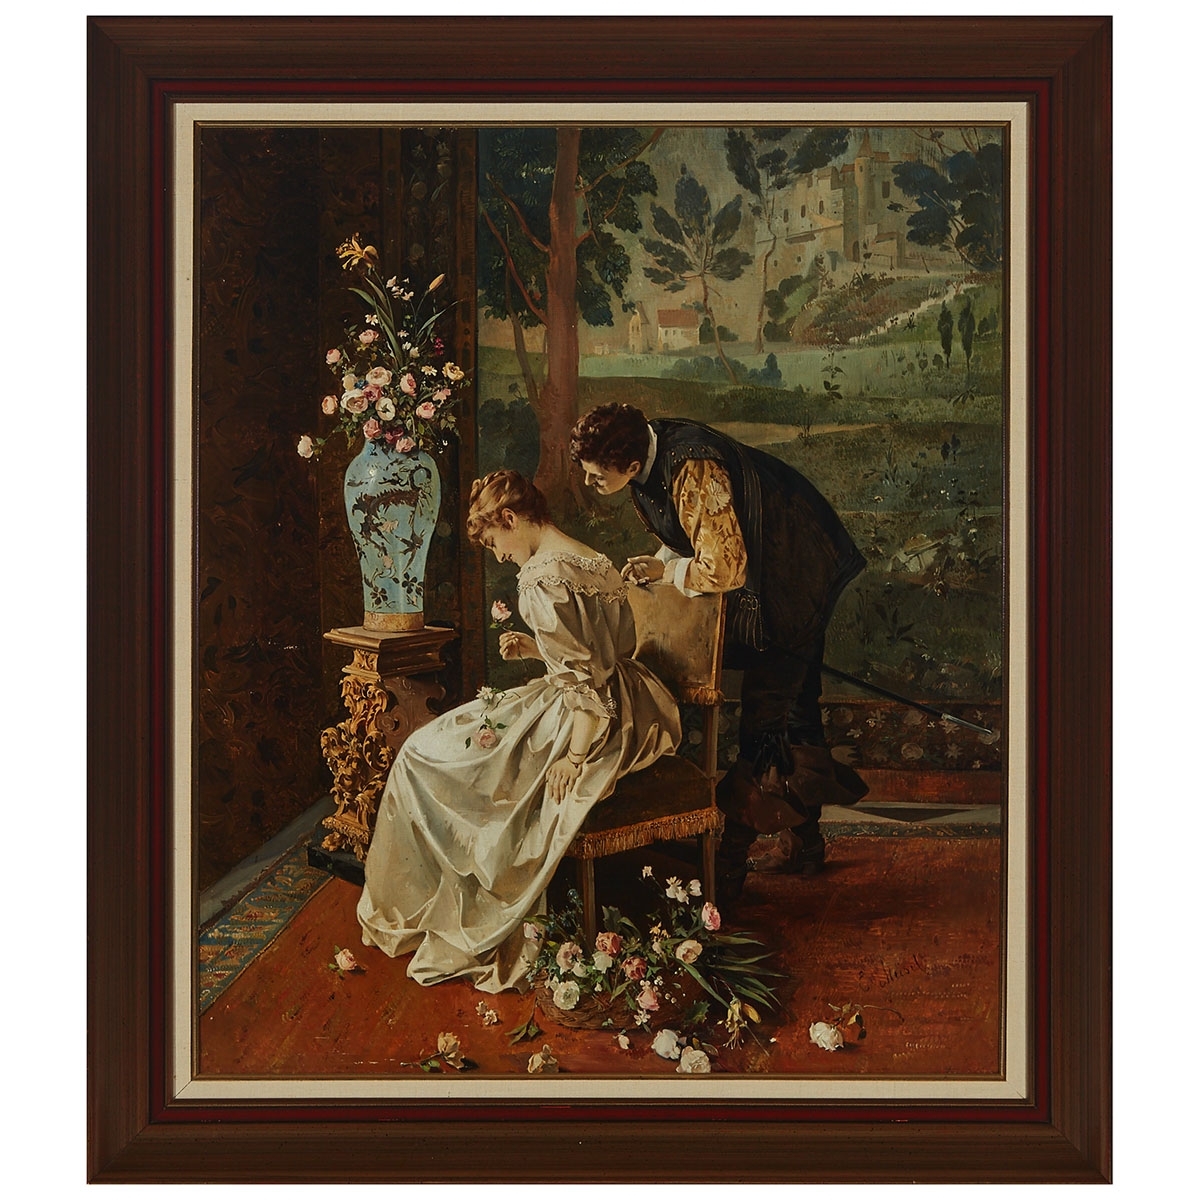 LOVER OFFERING A ROSE by Ernst Meisel